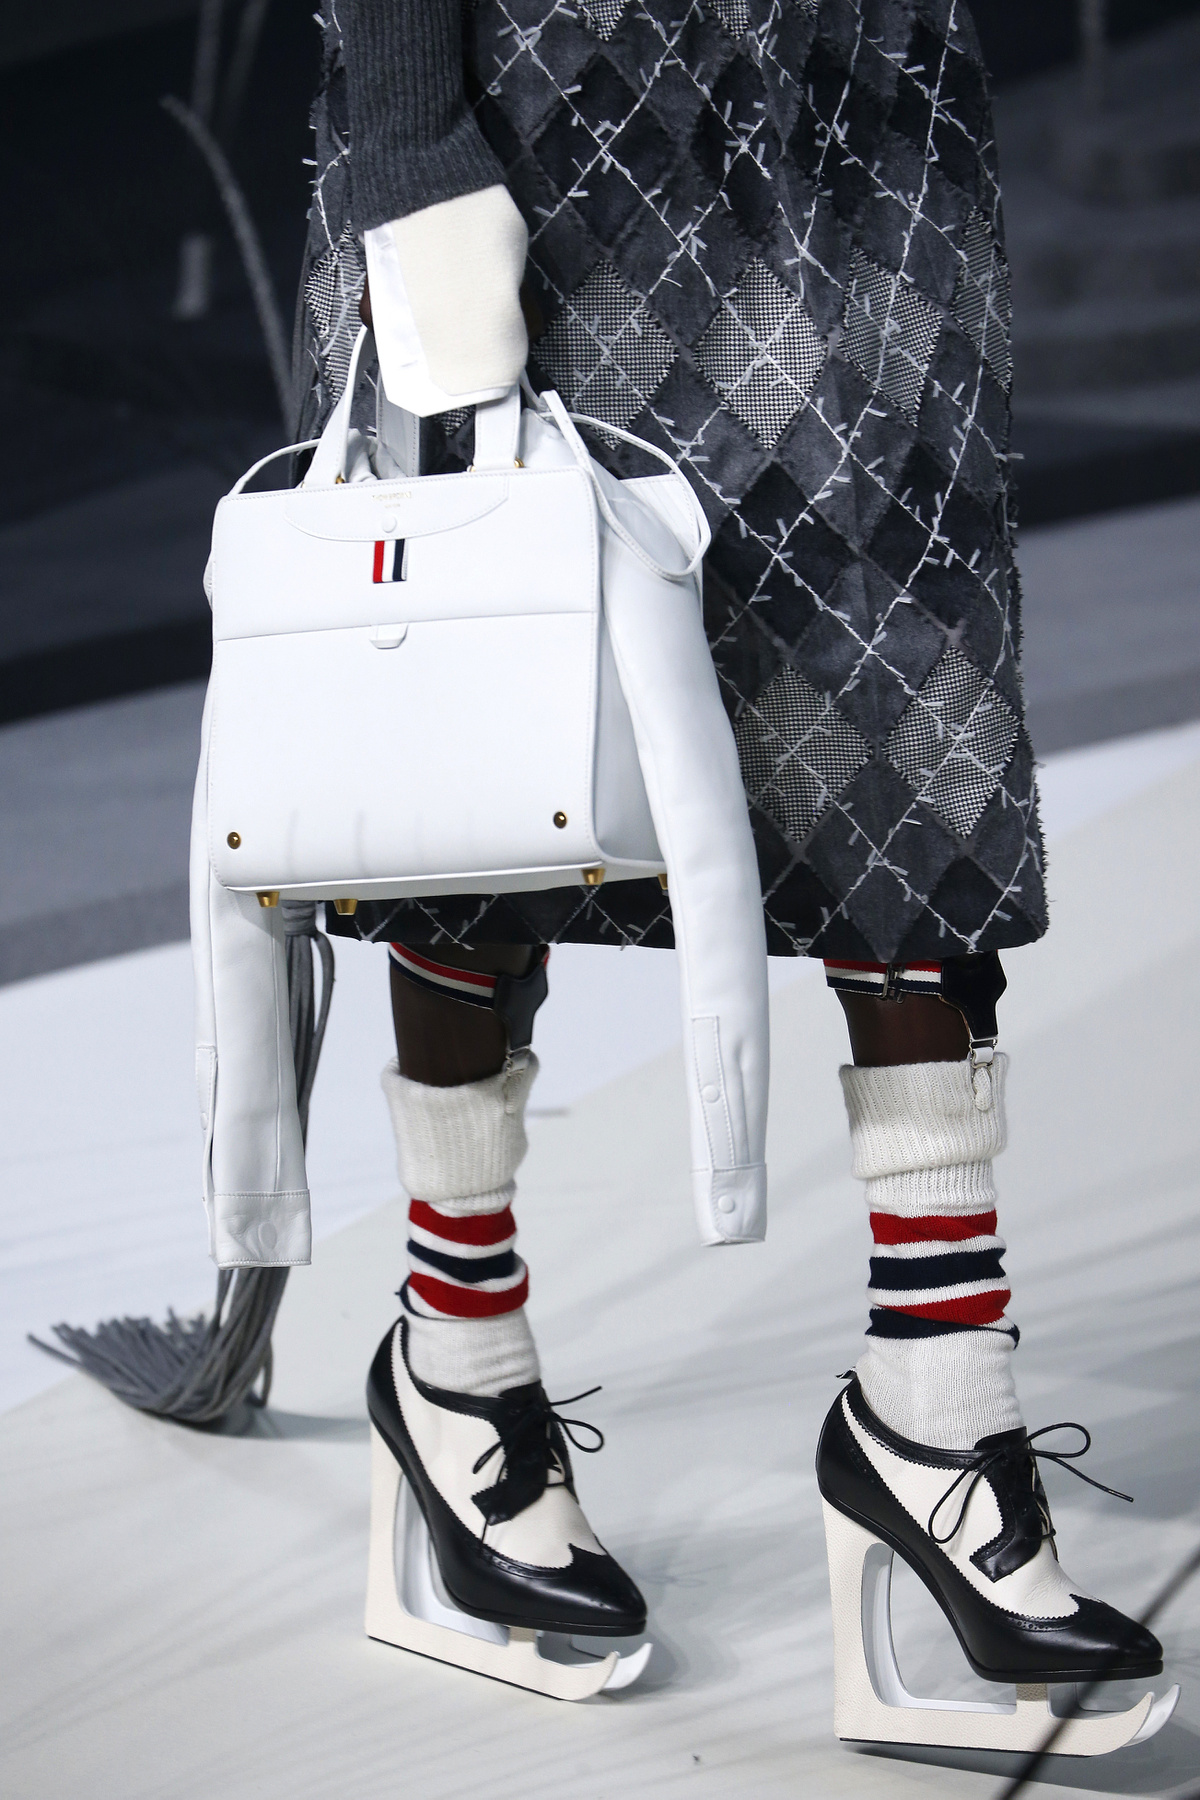 Fűzős Dior csizma és piros csíkos Gucci zokni a Sydney-i divathéten.

